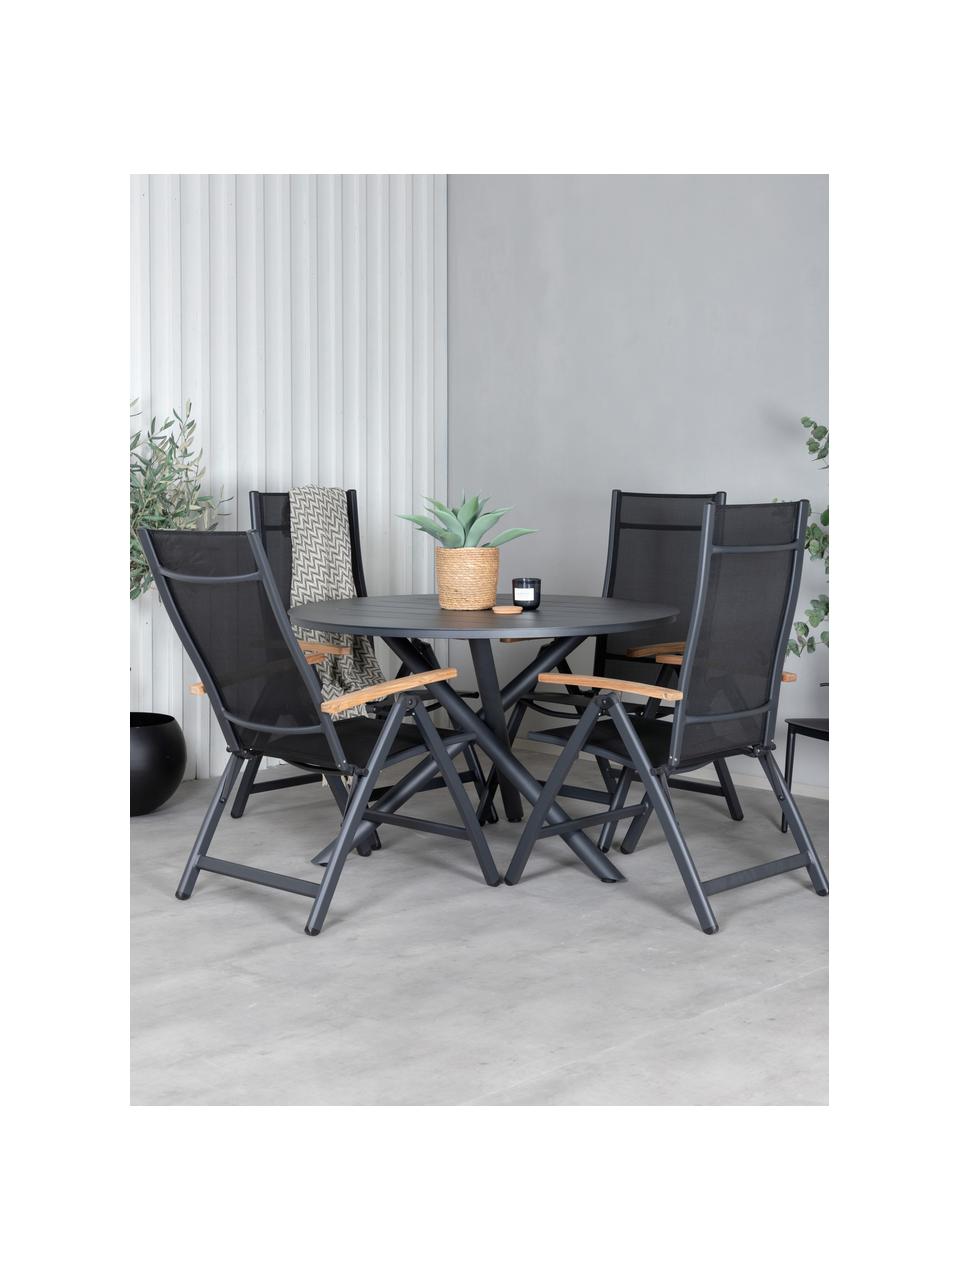 Składane krzesło ogrodowe Panama, Stelaż: aluminium, lakierowane, Czarny, drewno tekowe, S 58 x G 75 cm